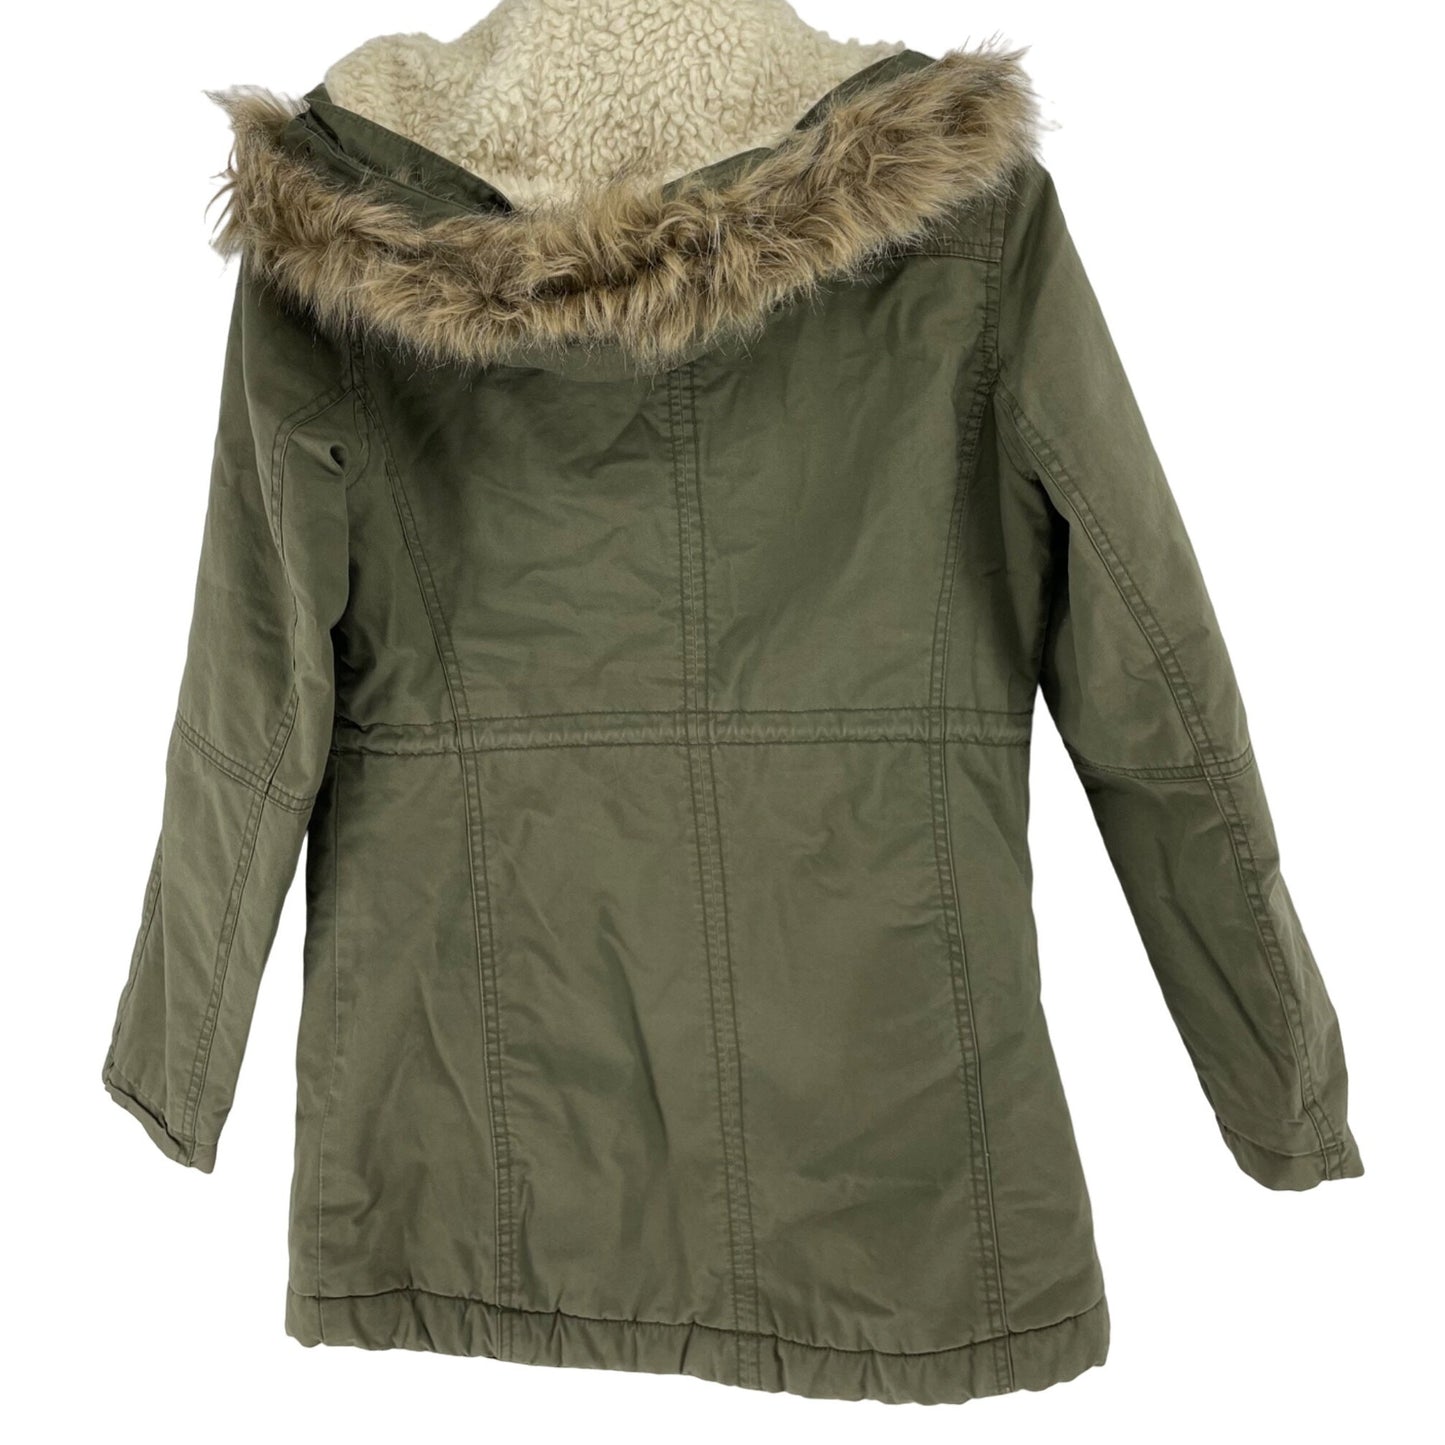 Gap Women's Size XS Army Green Parka Coat W/ Faux Fur Hood